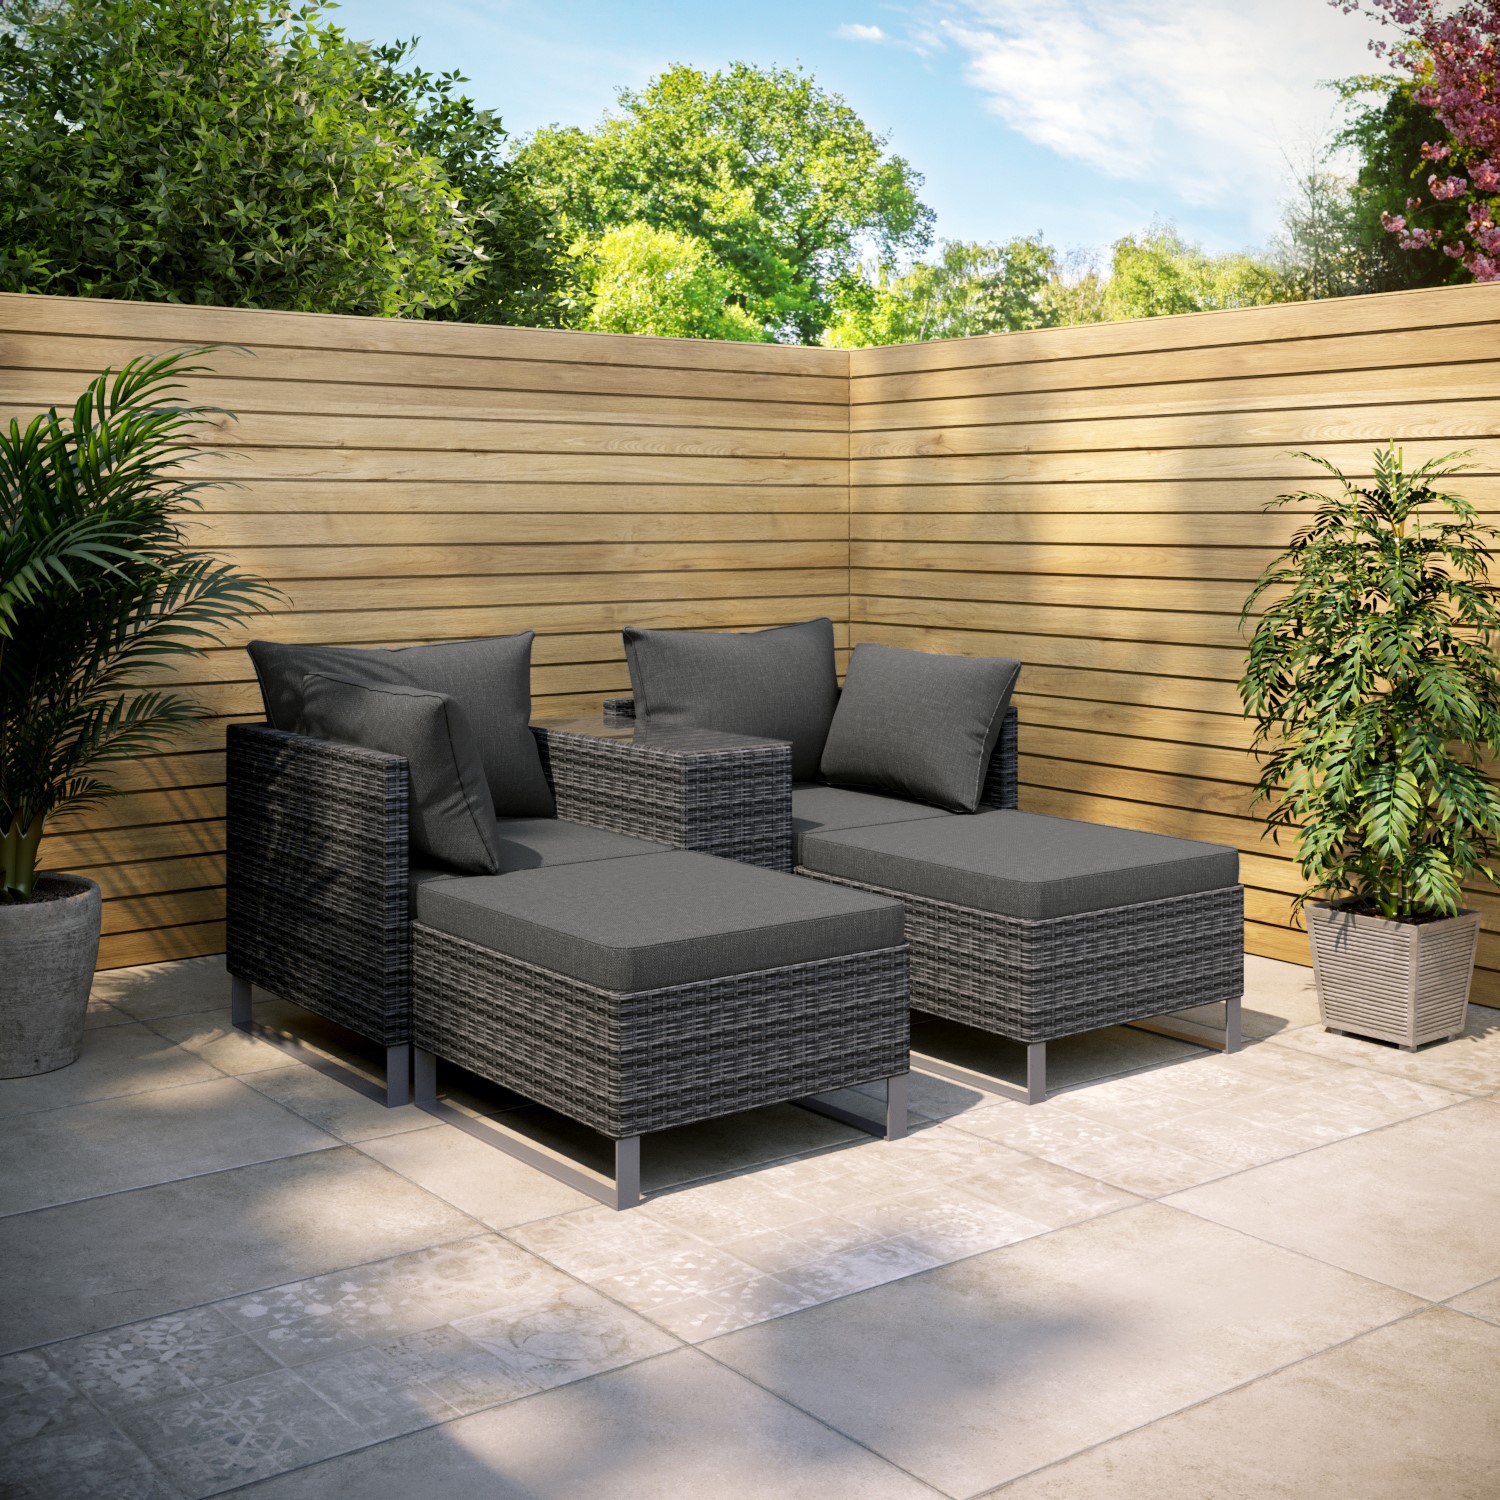 Photo of 4 seater grey modular rattan garden sun lounger set with table - como